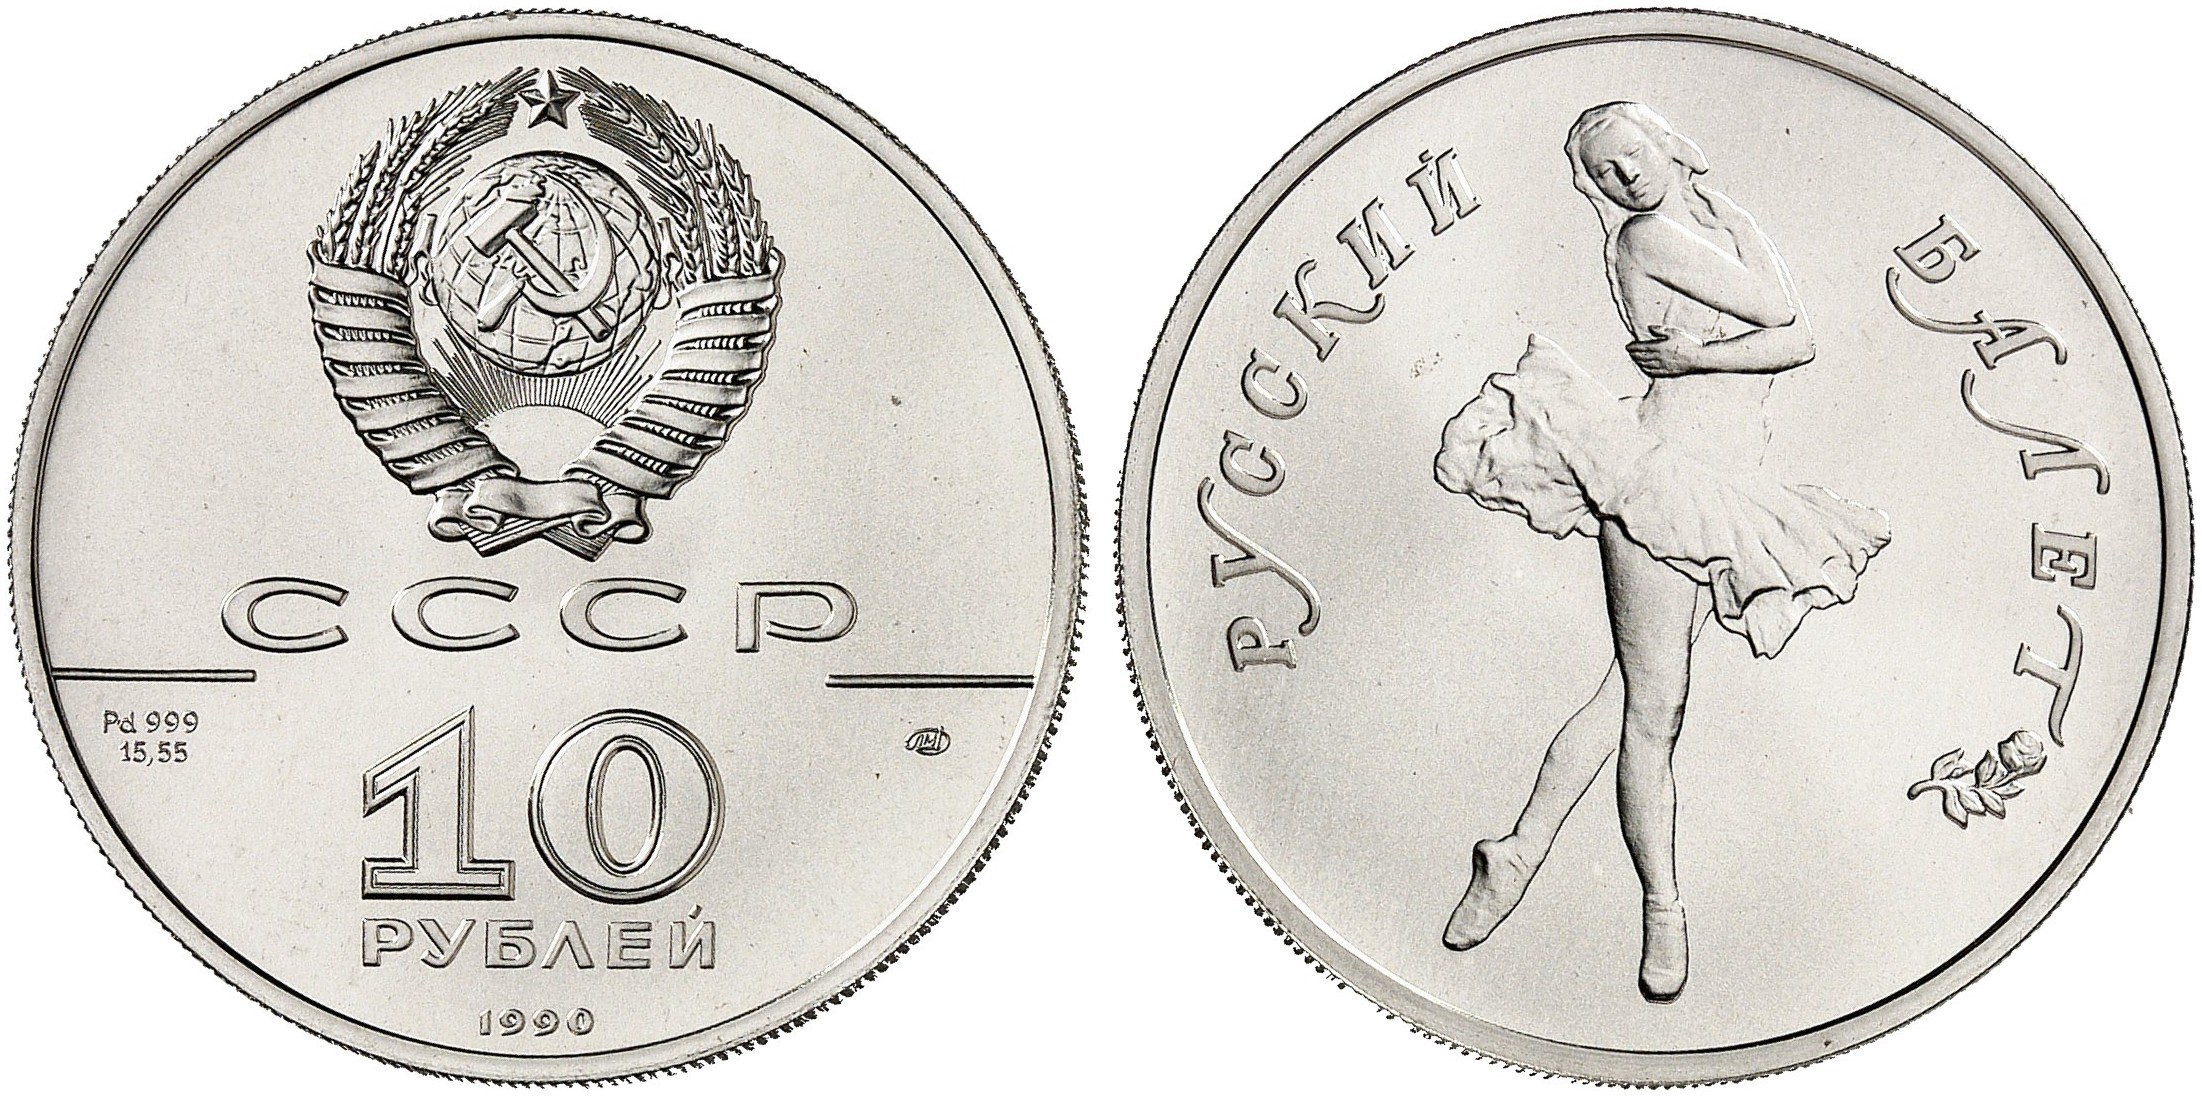 260 Евро в рублях. 5000 рублей в леей